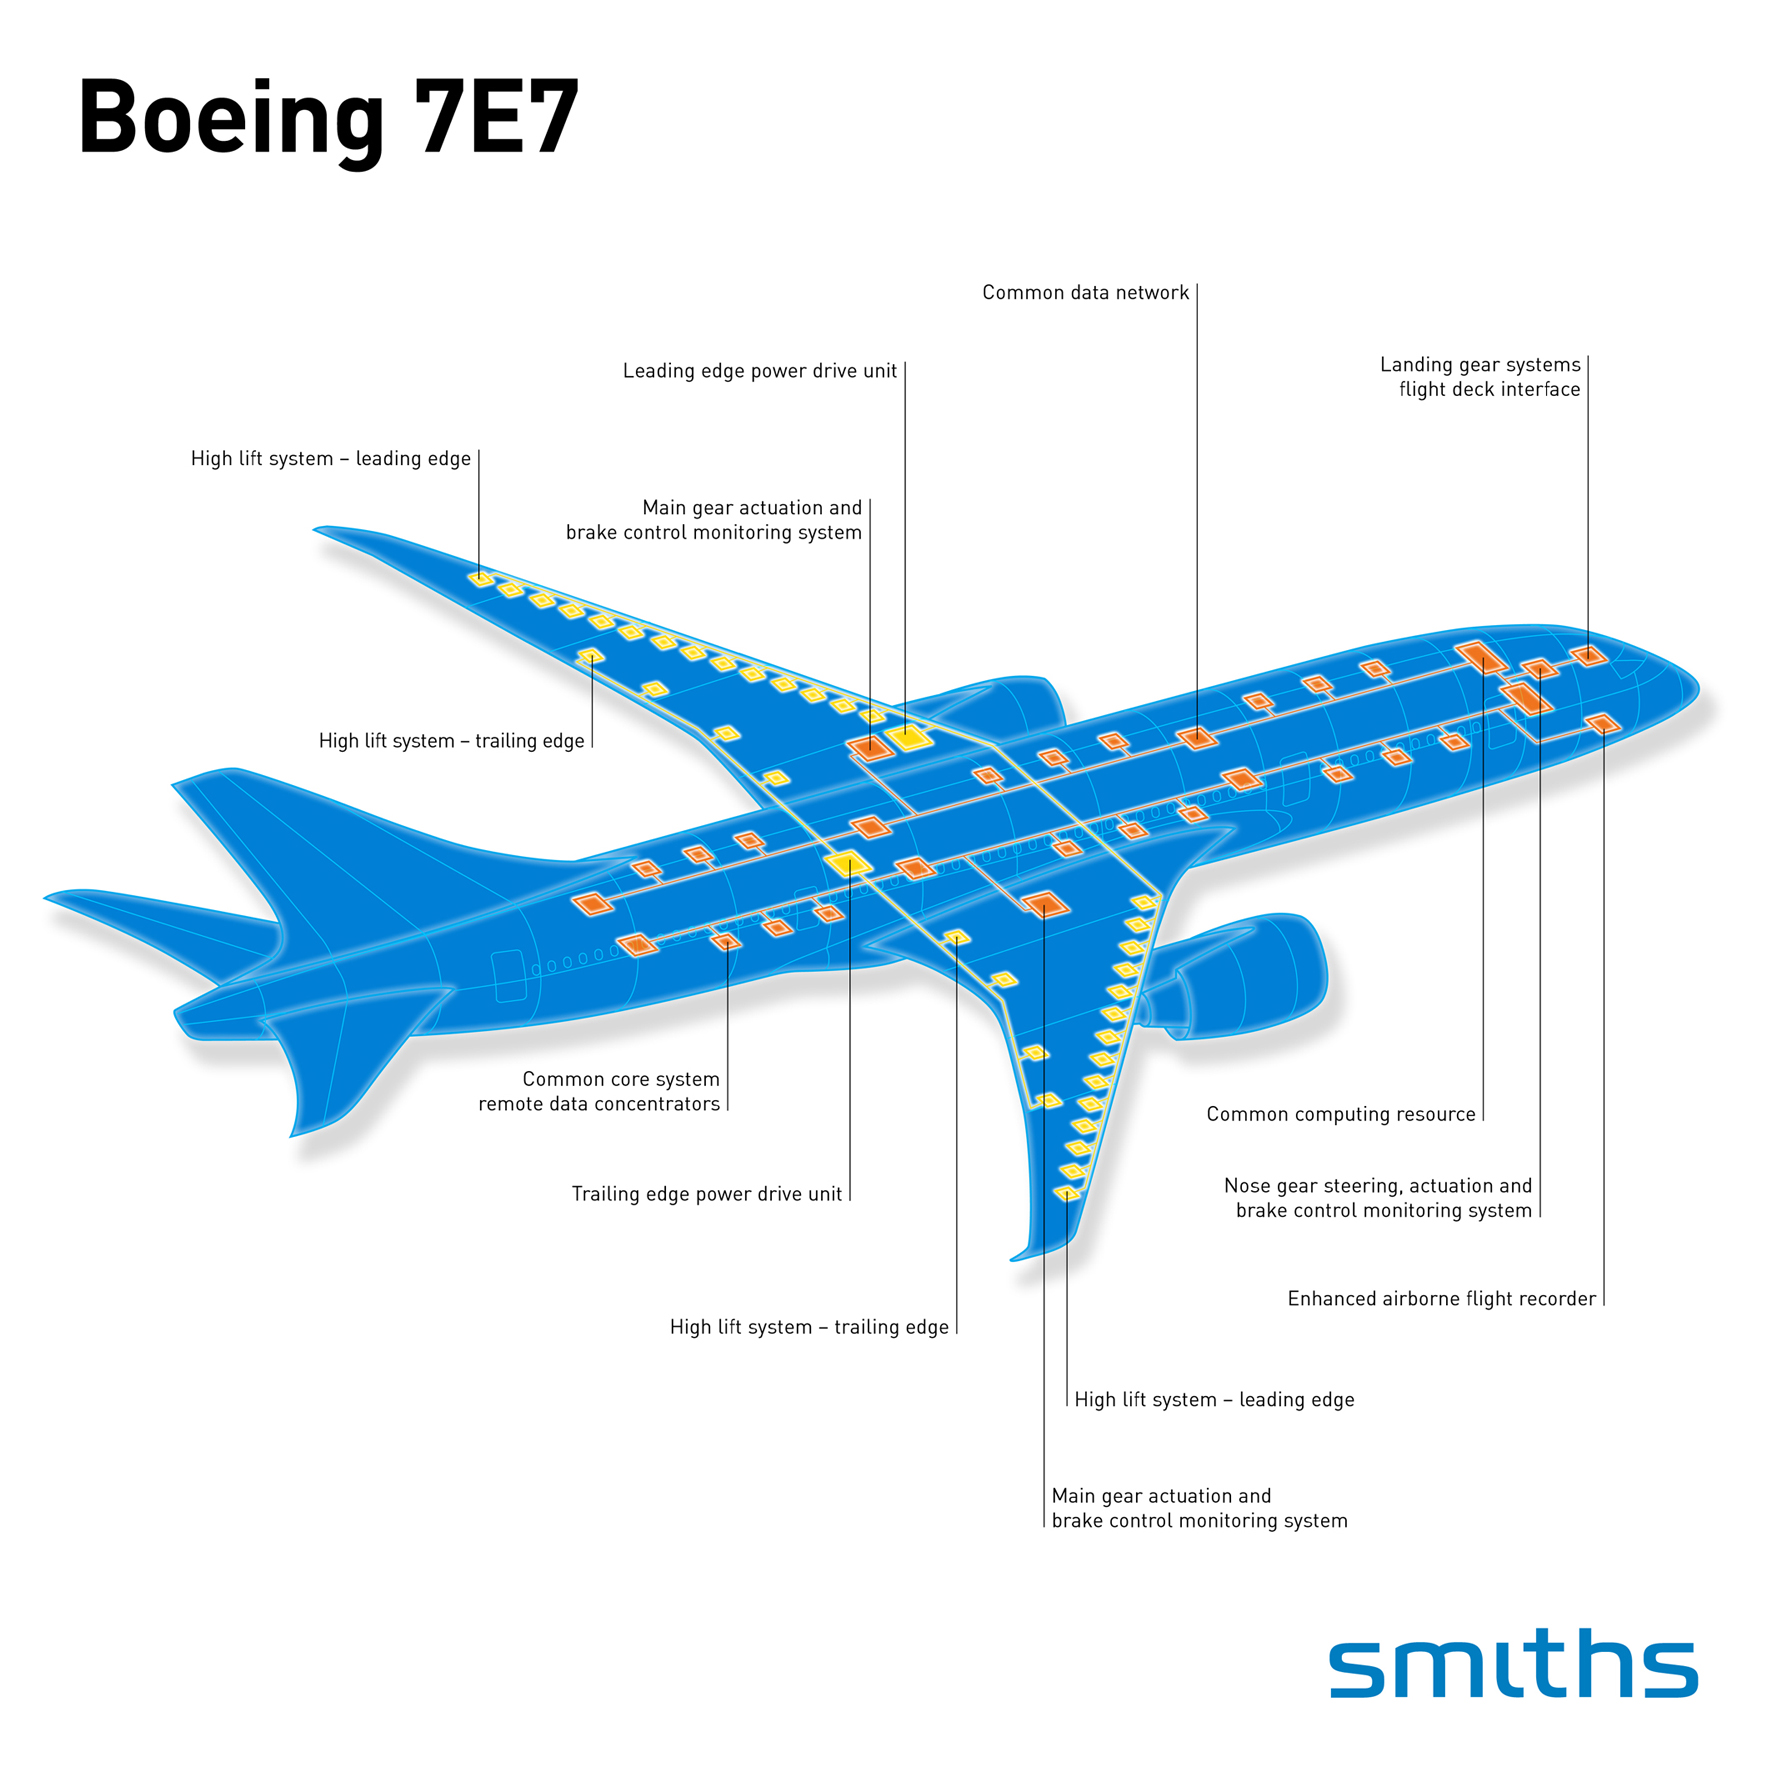 7E7 dreamliner systems